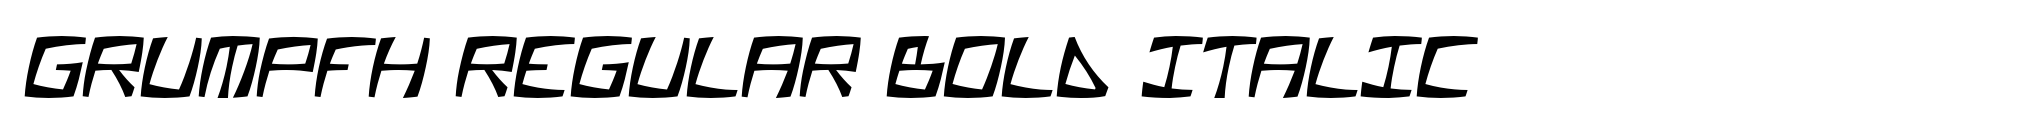 Grumpfh Regular Bold Italic image